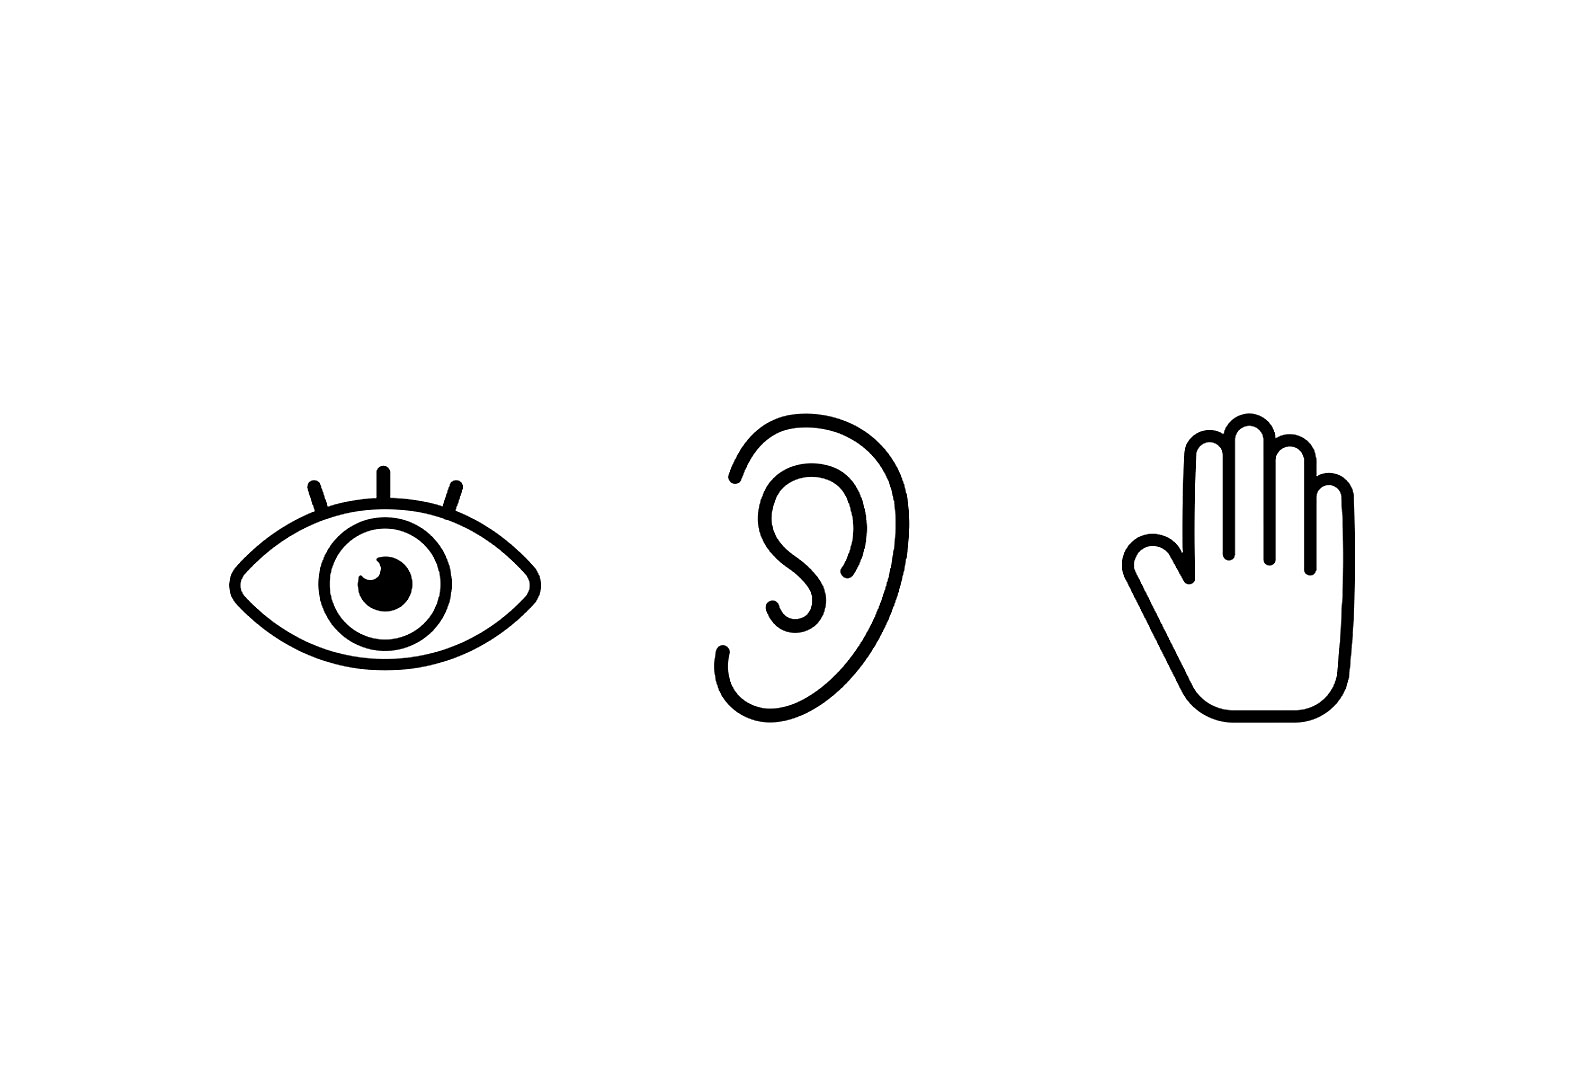 Icônes simples d'un œil, d'une oreille et d'une main